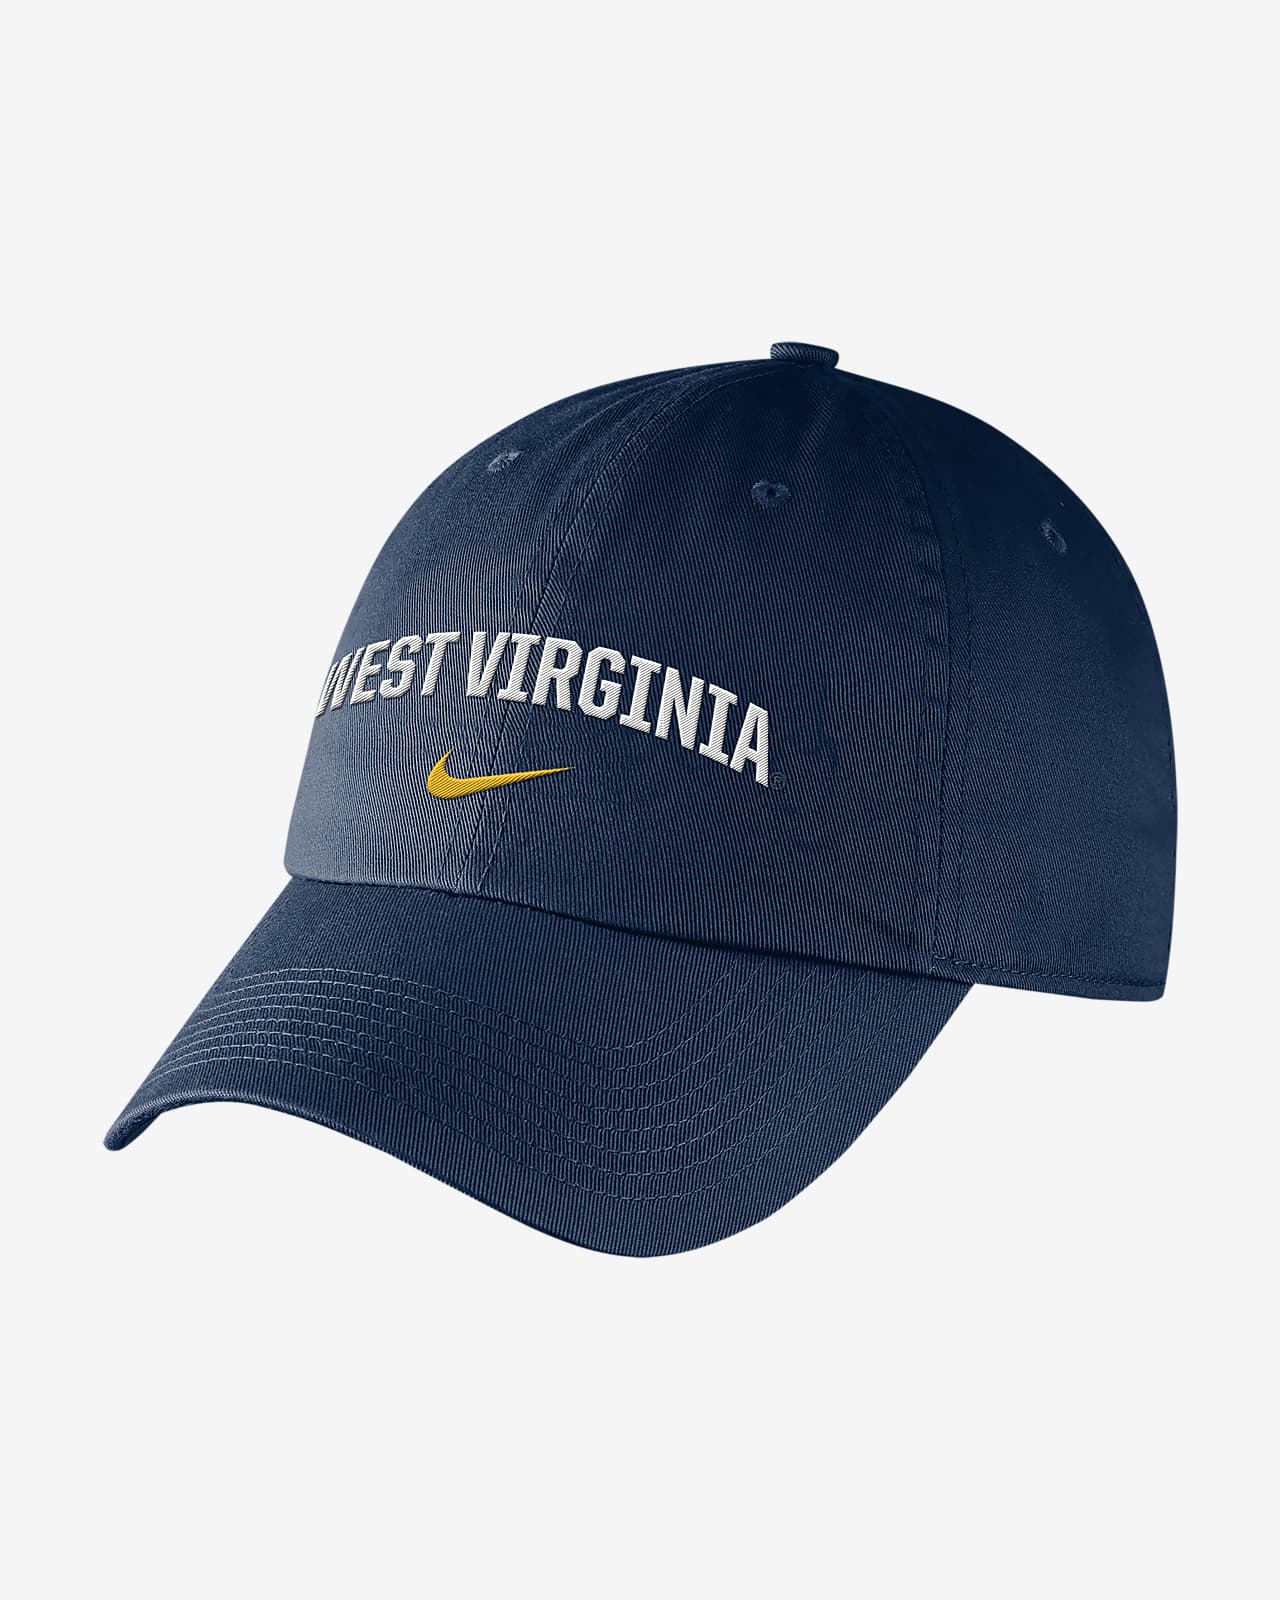 Nike College (West Virginia) Hat